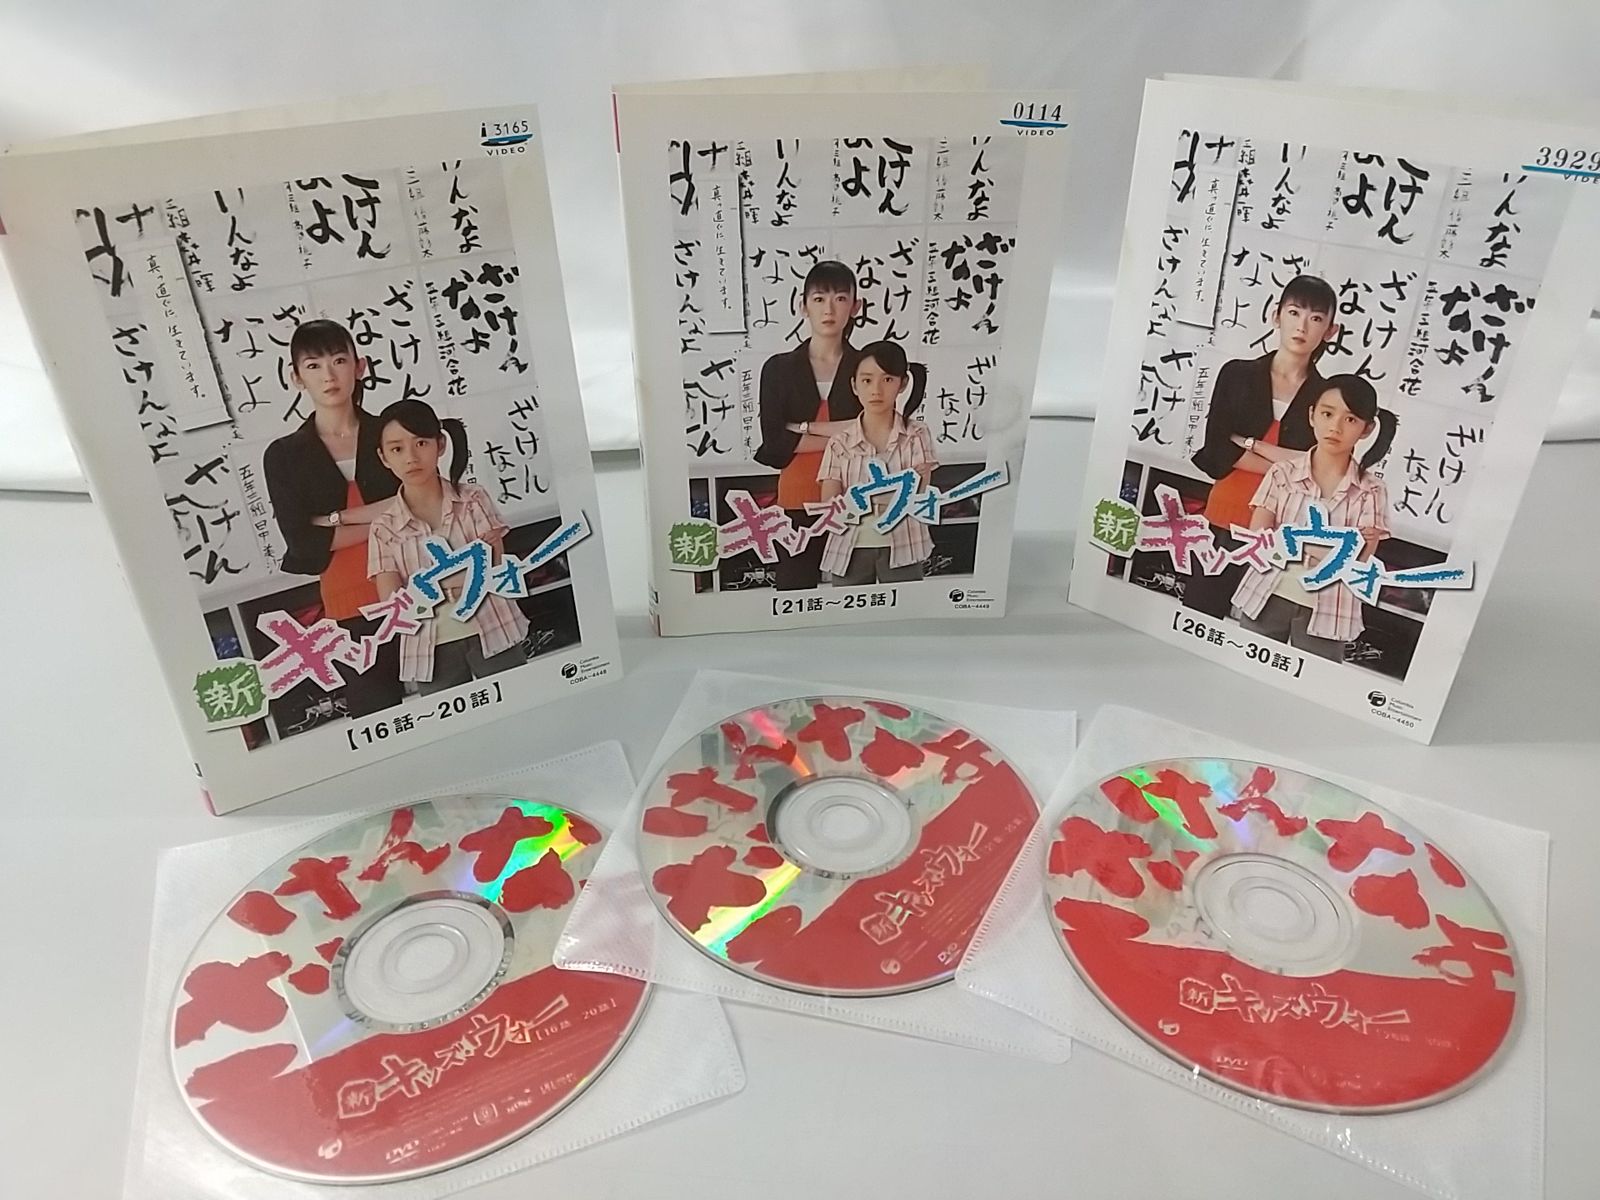 りんご様「新キッズ・ウォー」DVD 全9巻 セット 大河内奈々子 - TVドラマ